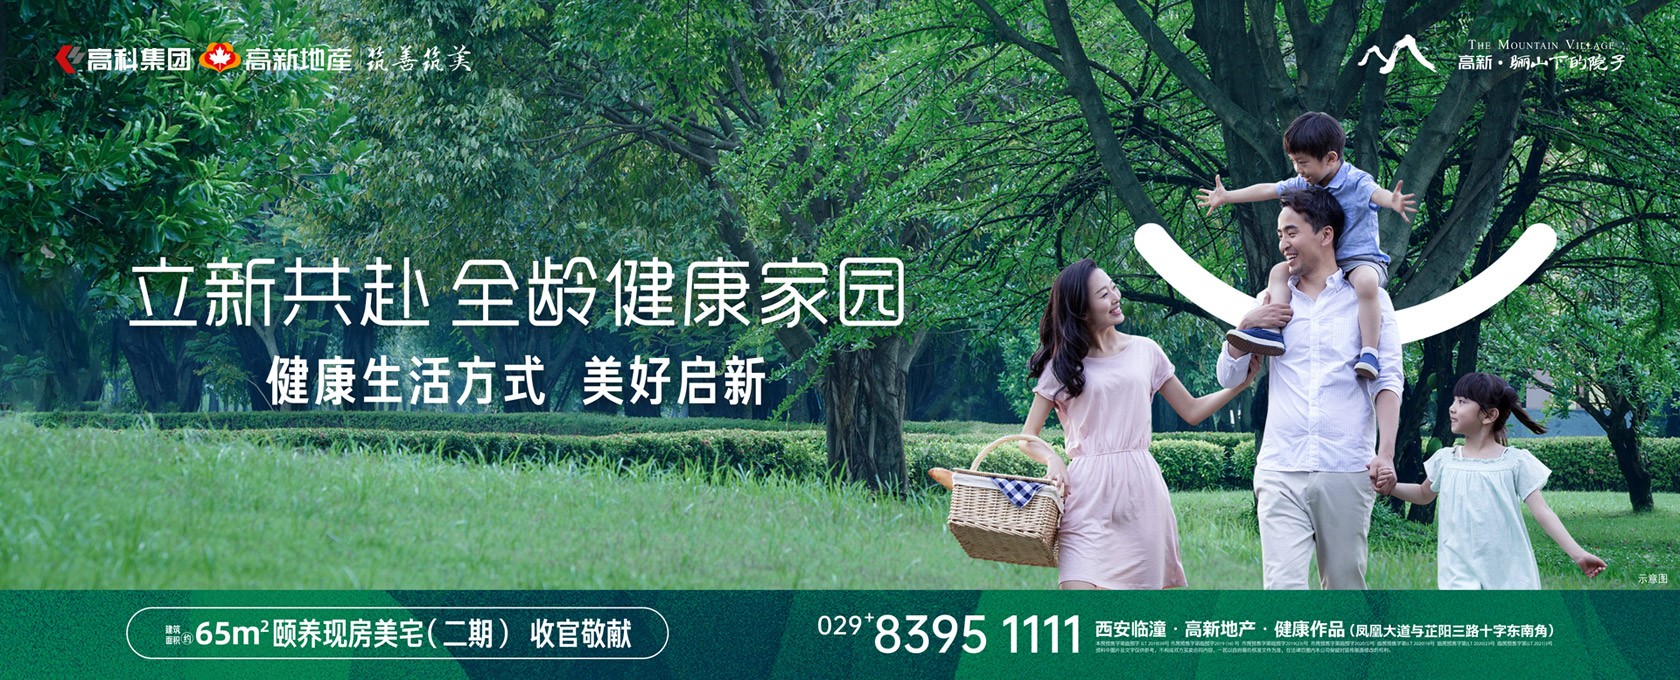 91中文字幕人人免费观看立新共赴 全龄健康家园